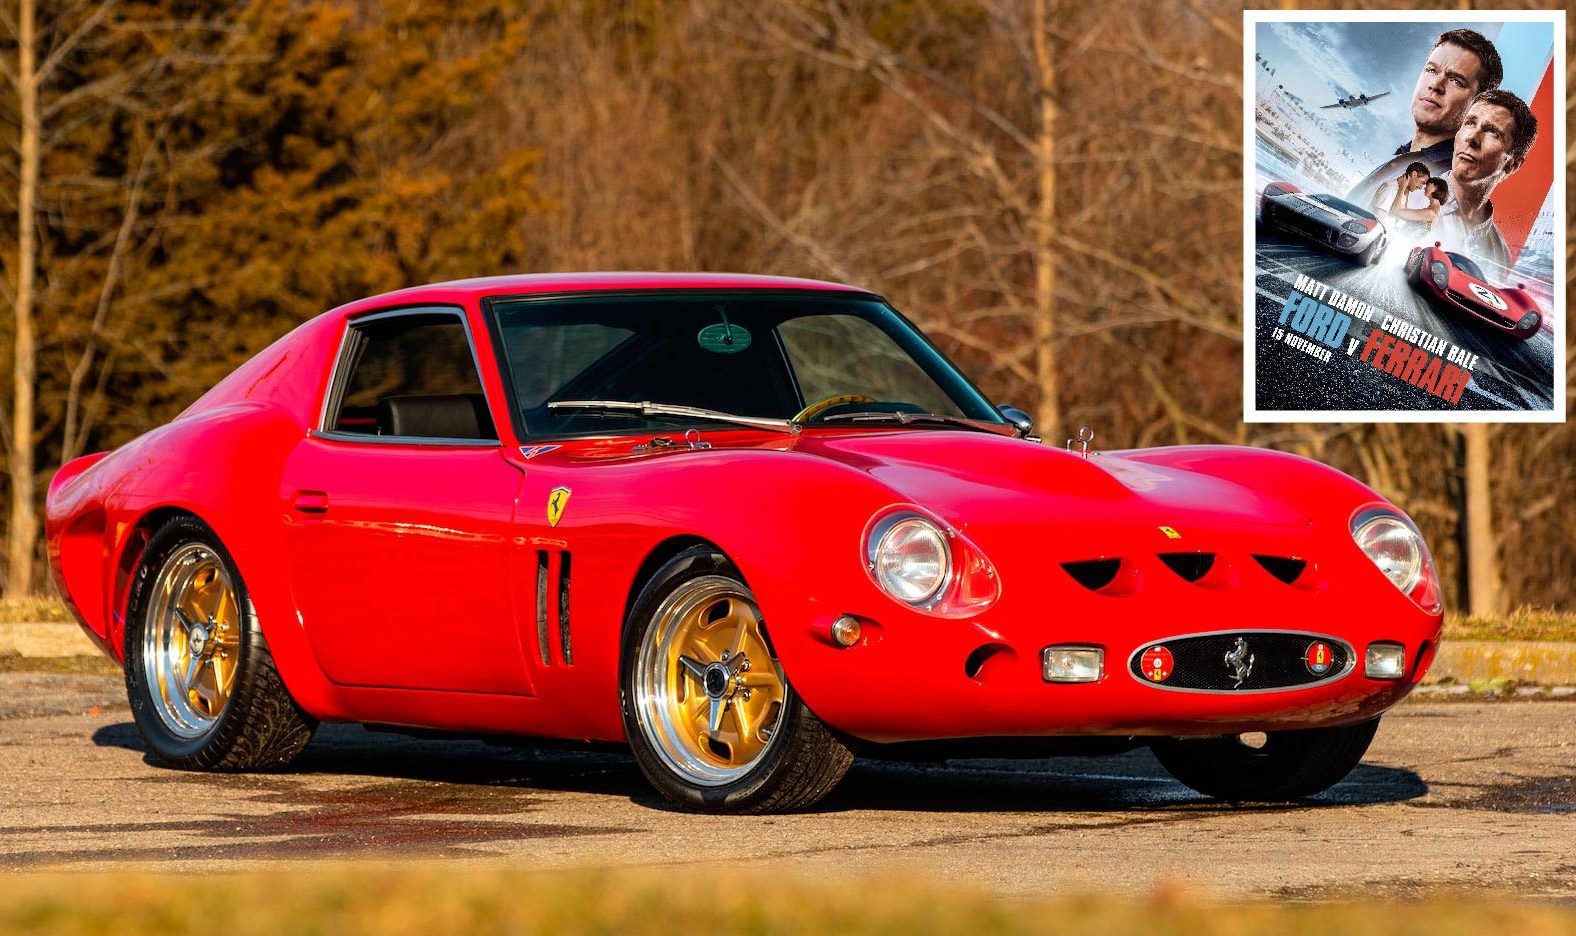 For Sale: A Ferrari 250 GTO Replica That Appeared In “The Italian Job” + “Ford v Ferrari” via @Silodrome